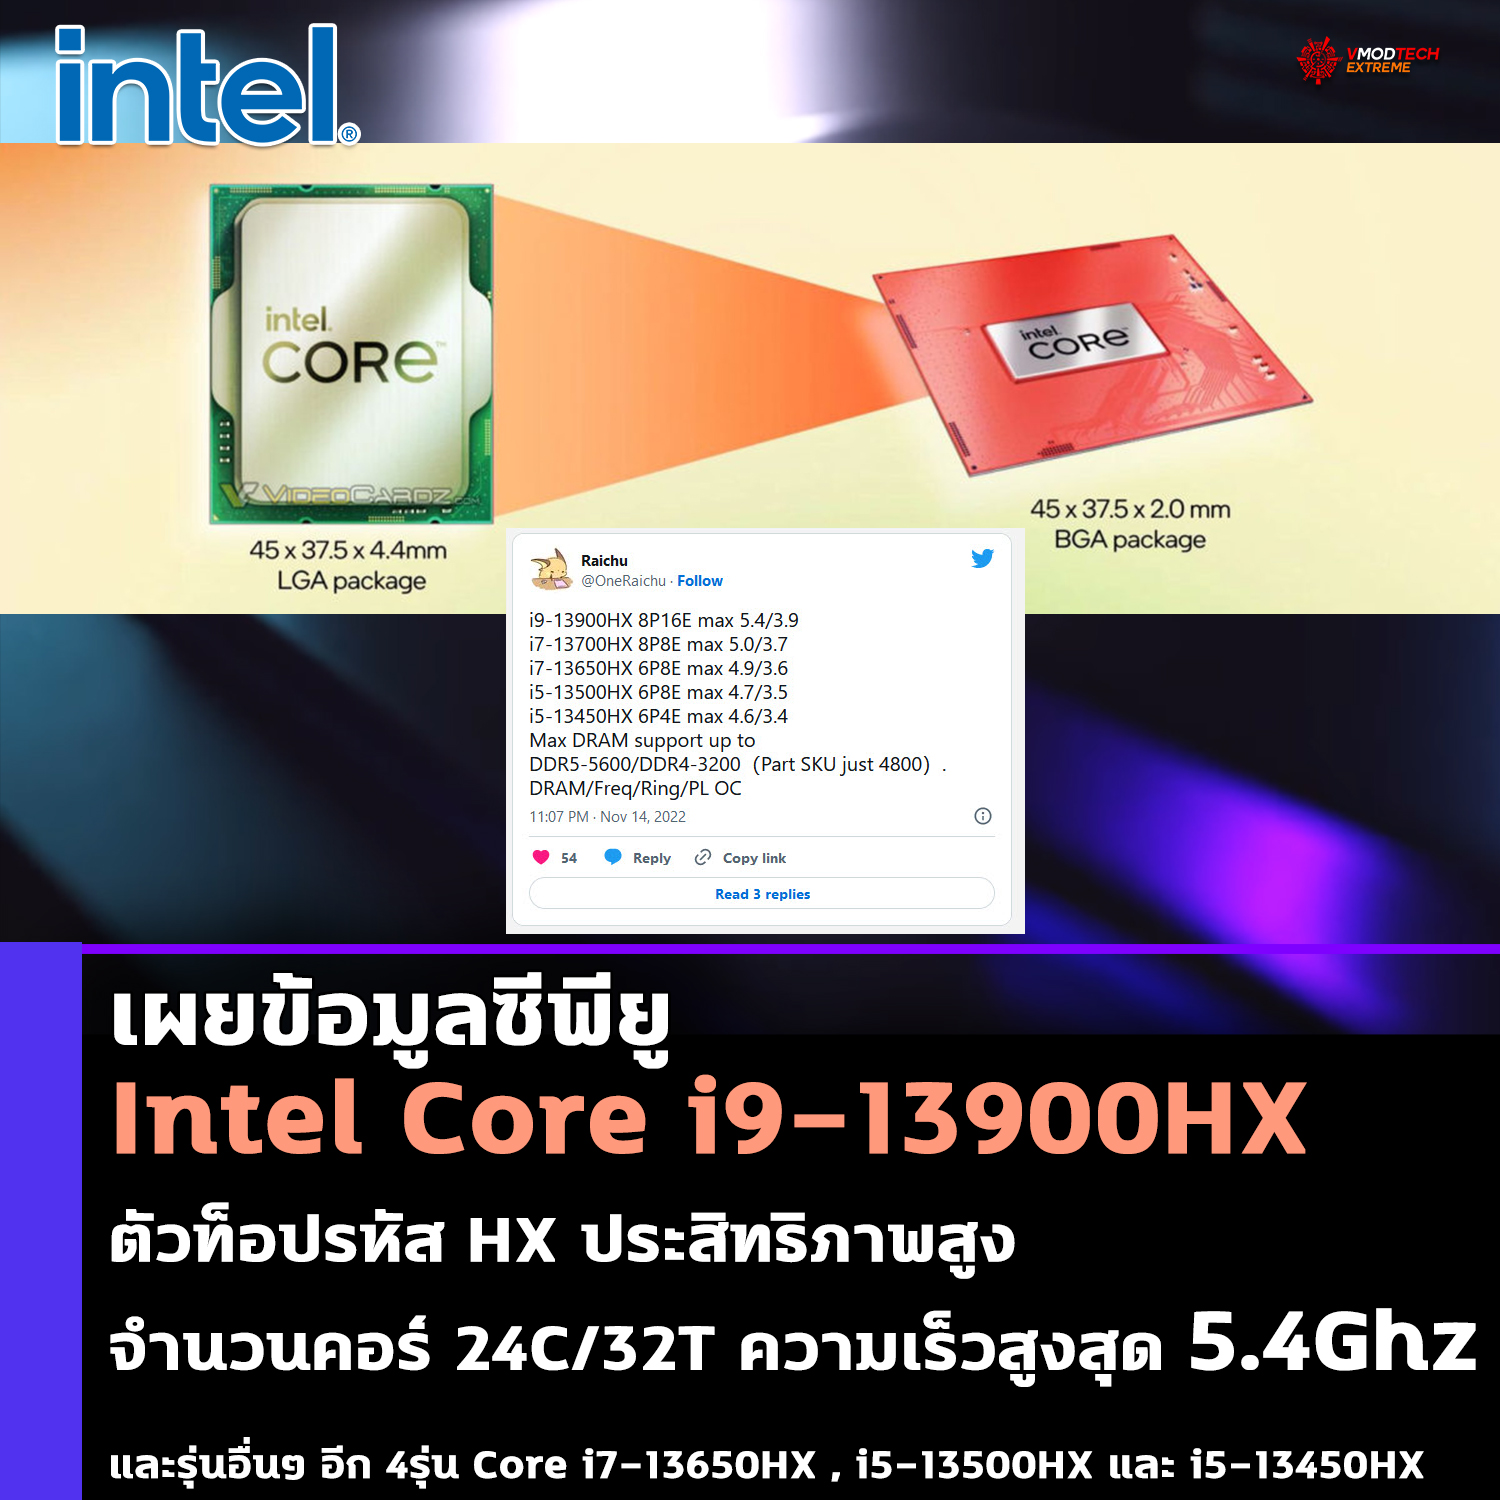 intel core i9 13900hx เผยข้อมูลซีพียู Intel Core i9 13900HX ตัวท็อปที่ใช้งานในแล็ปท็อปรุ่นใหม่ล่าสุดมีจำนวนคอร์ 24C/32T ความเร็วสูงสุด 5.4Ghz 